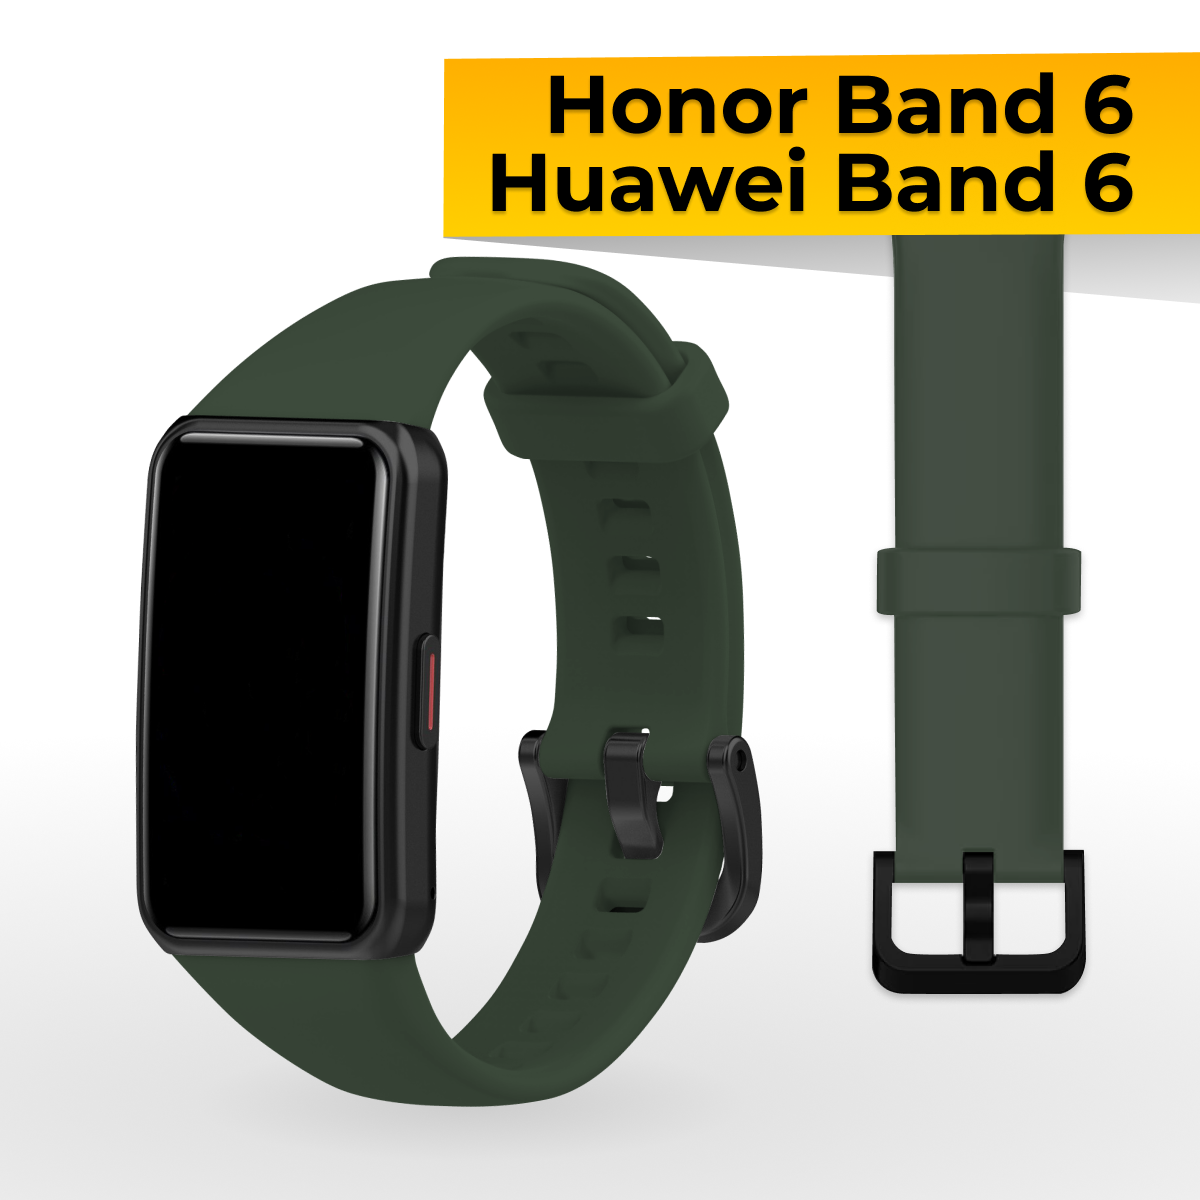 Силиконовый ремешок с застежкой для Honor Band 6 и Huawei Band 6 / Спортивный сменный браслет на часы Хонор Бэнд 6 и Хуавей Бэнд 6 / Зеленый